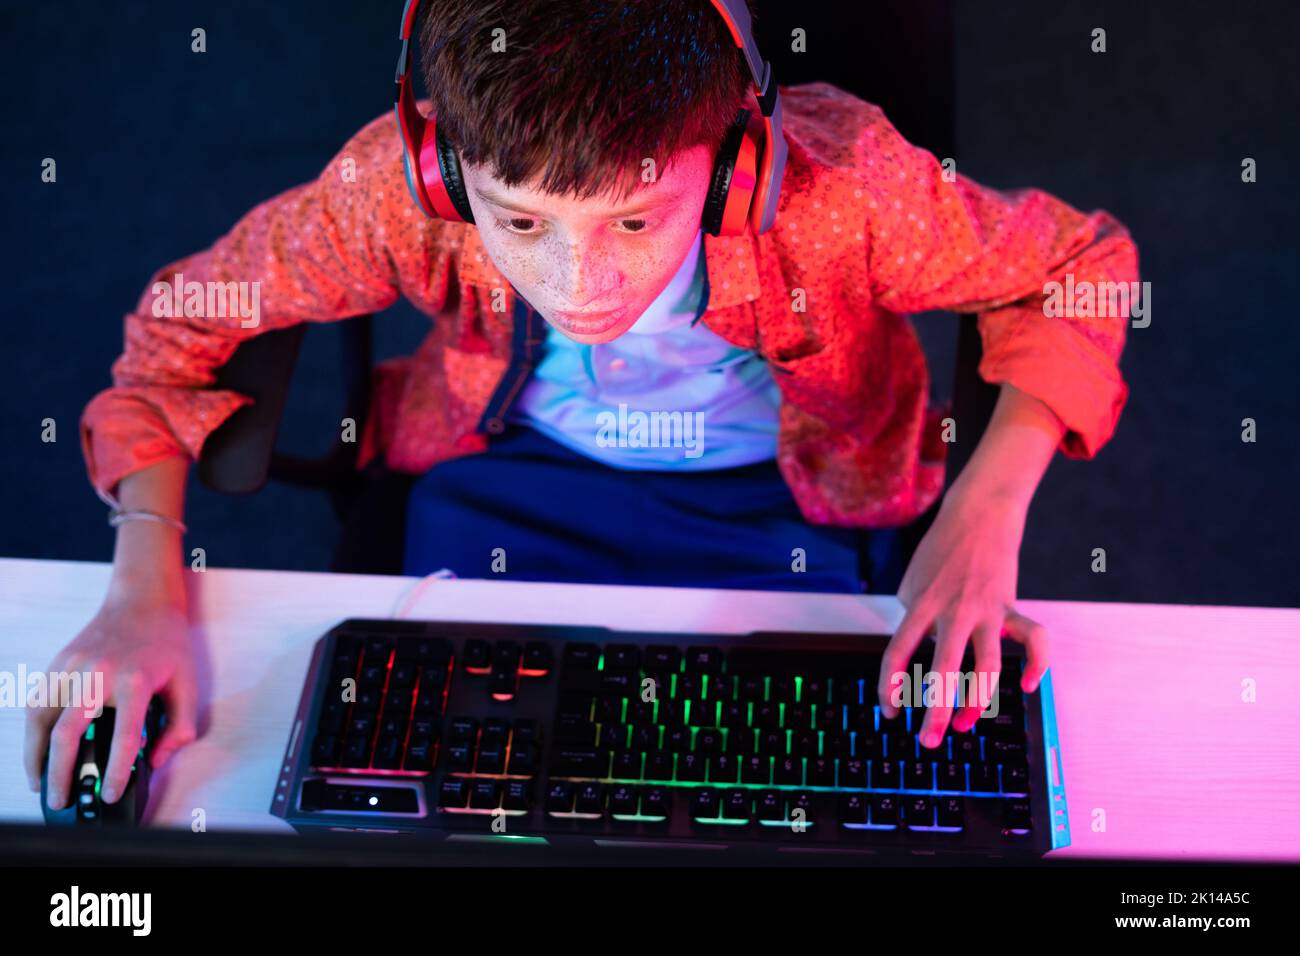 Enfoque en el niño, Vista superior Foto de niño adolescente con auriculares jugando videojuegos en el ordenador utilizando el teclado en casa - concepto de entretenimiento Foto de stock